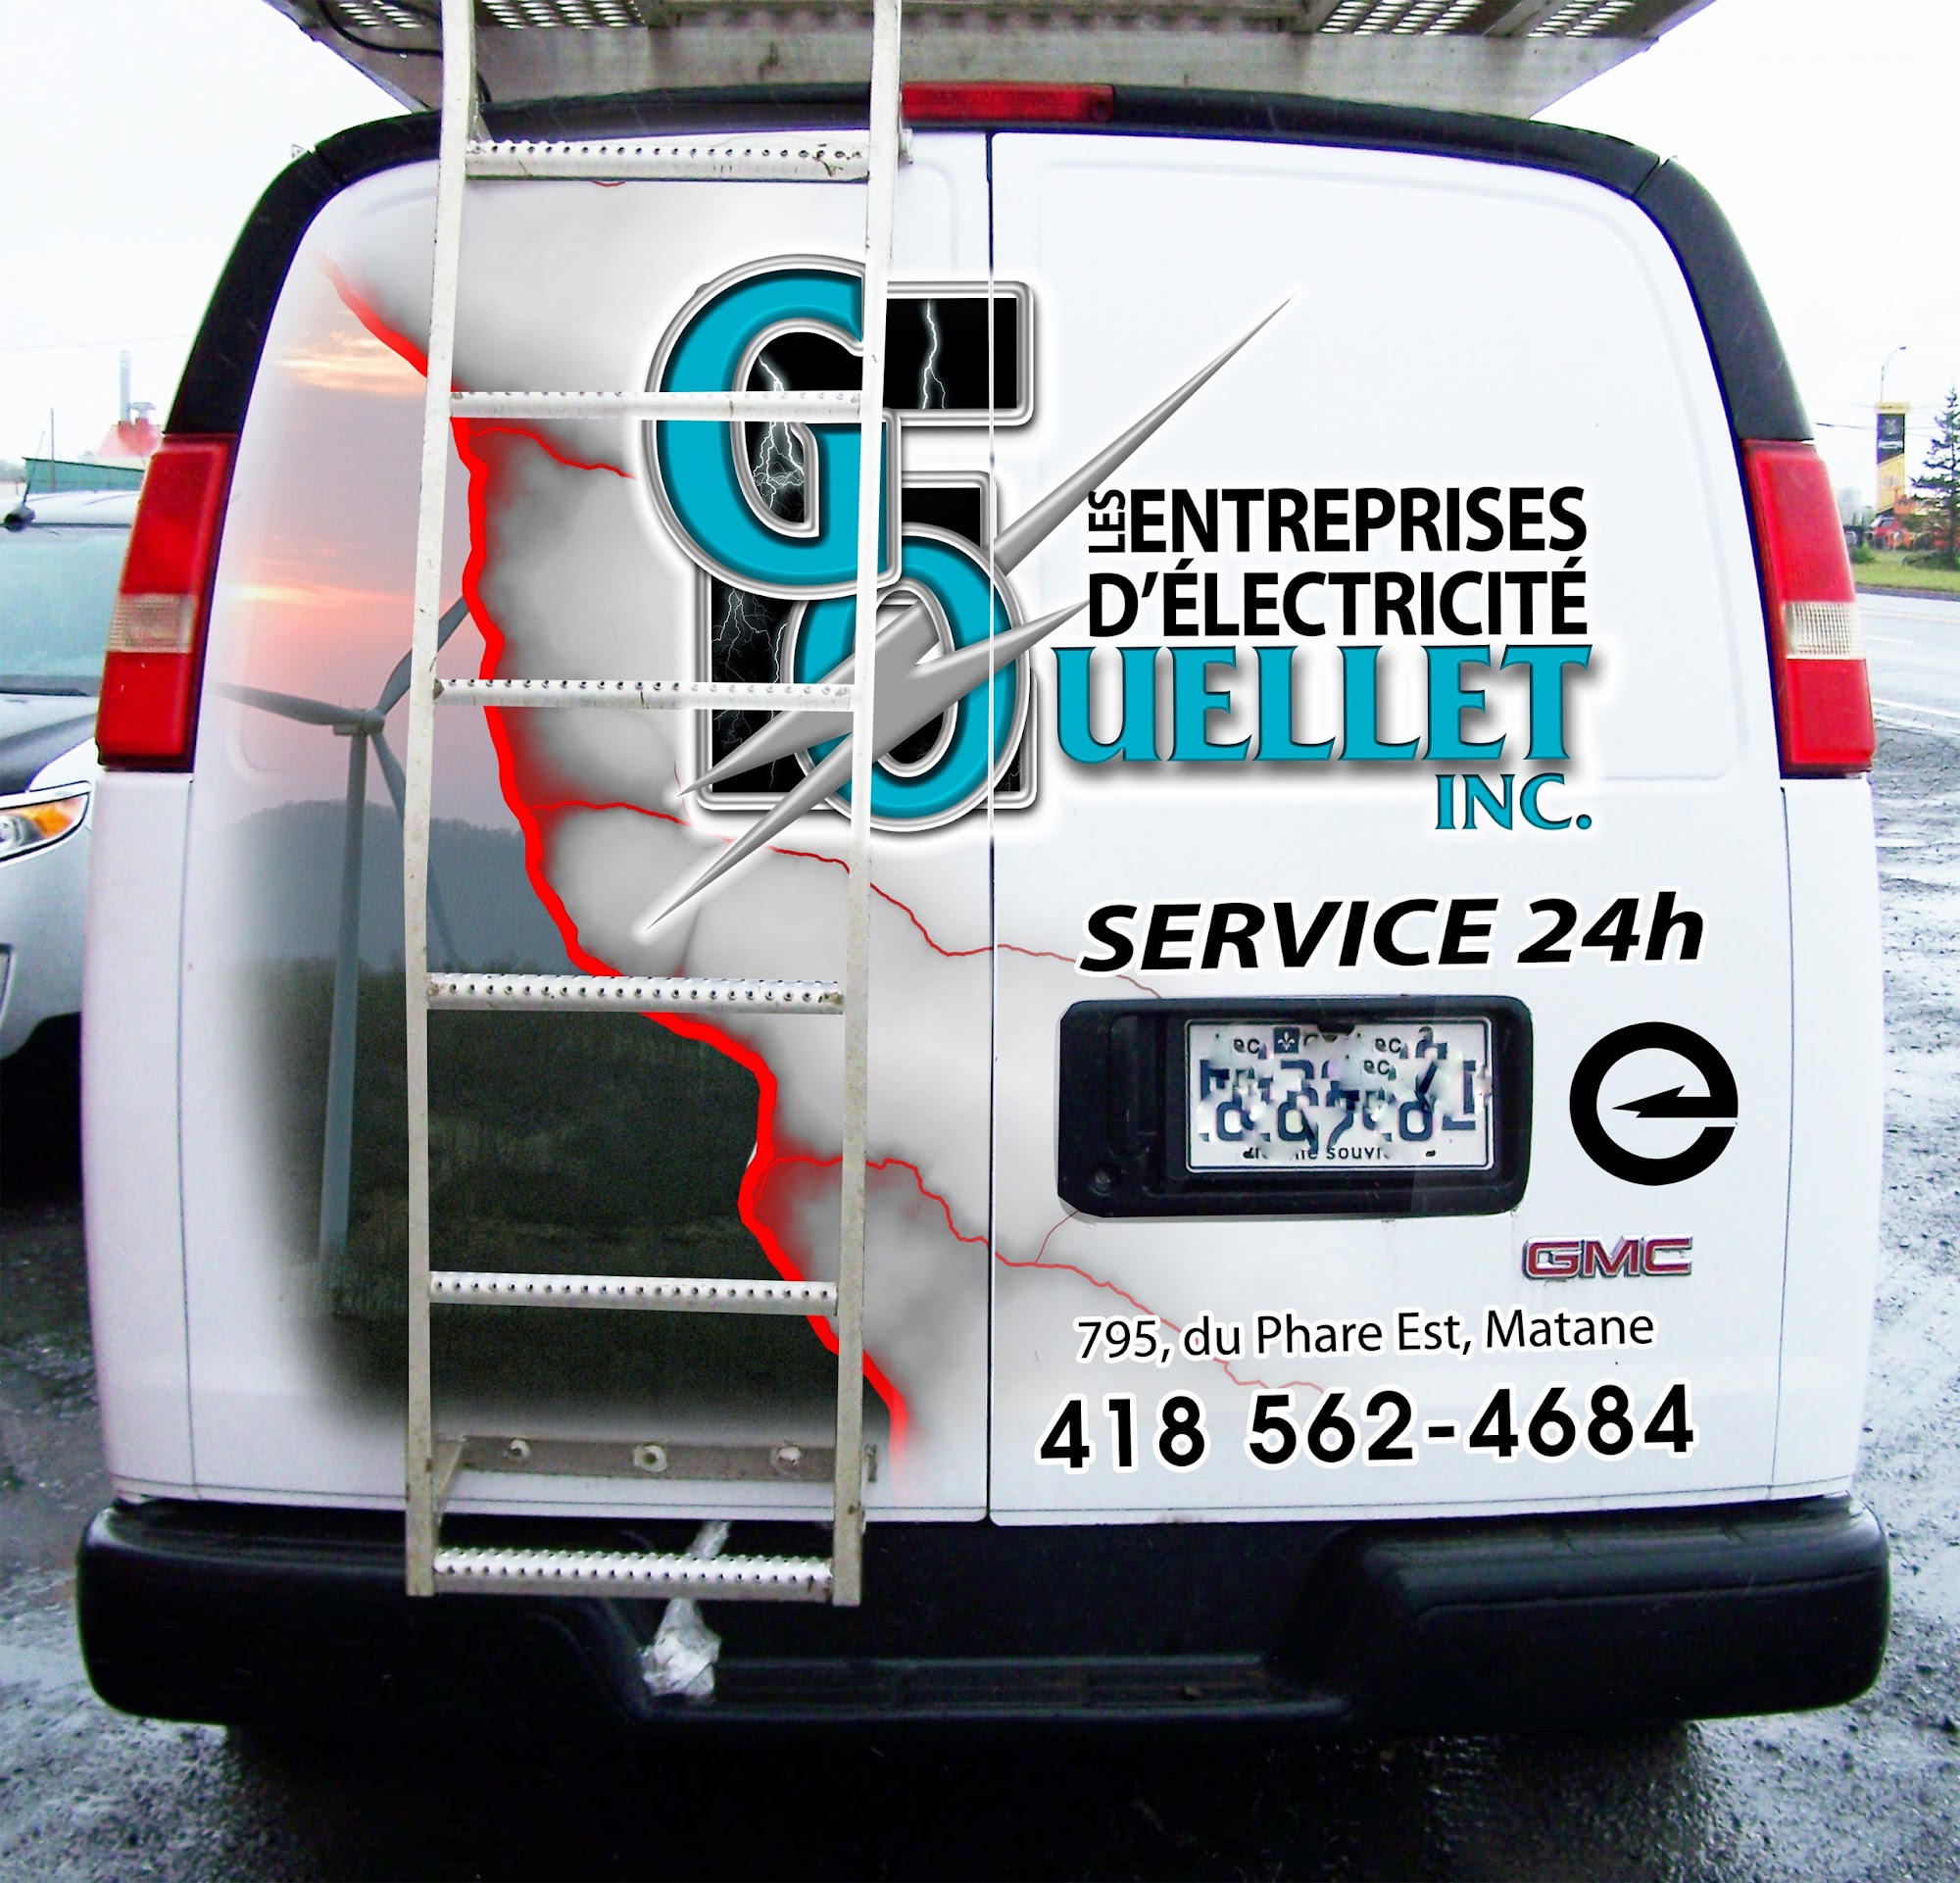 Les Entreprises d'Électricité G Ouellet Inc 795 Av. du Phare E, Matane Quebec G4W 1A9